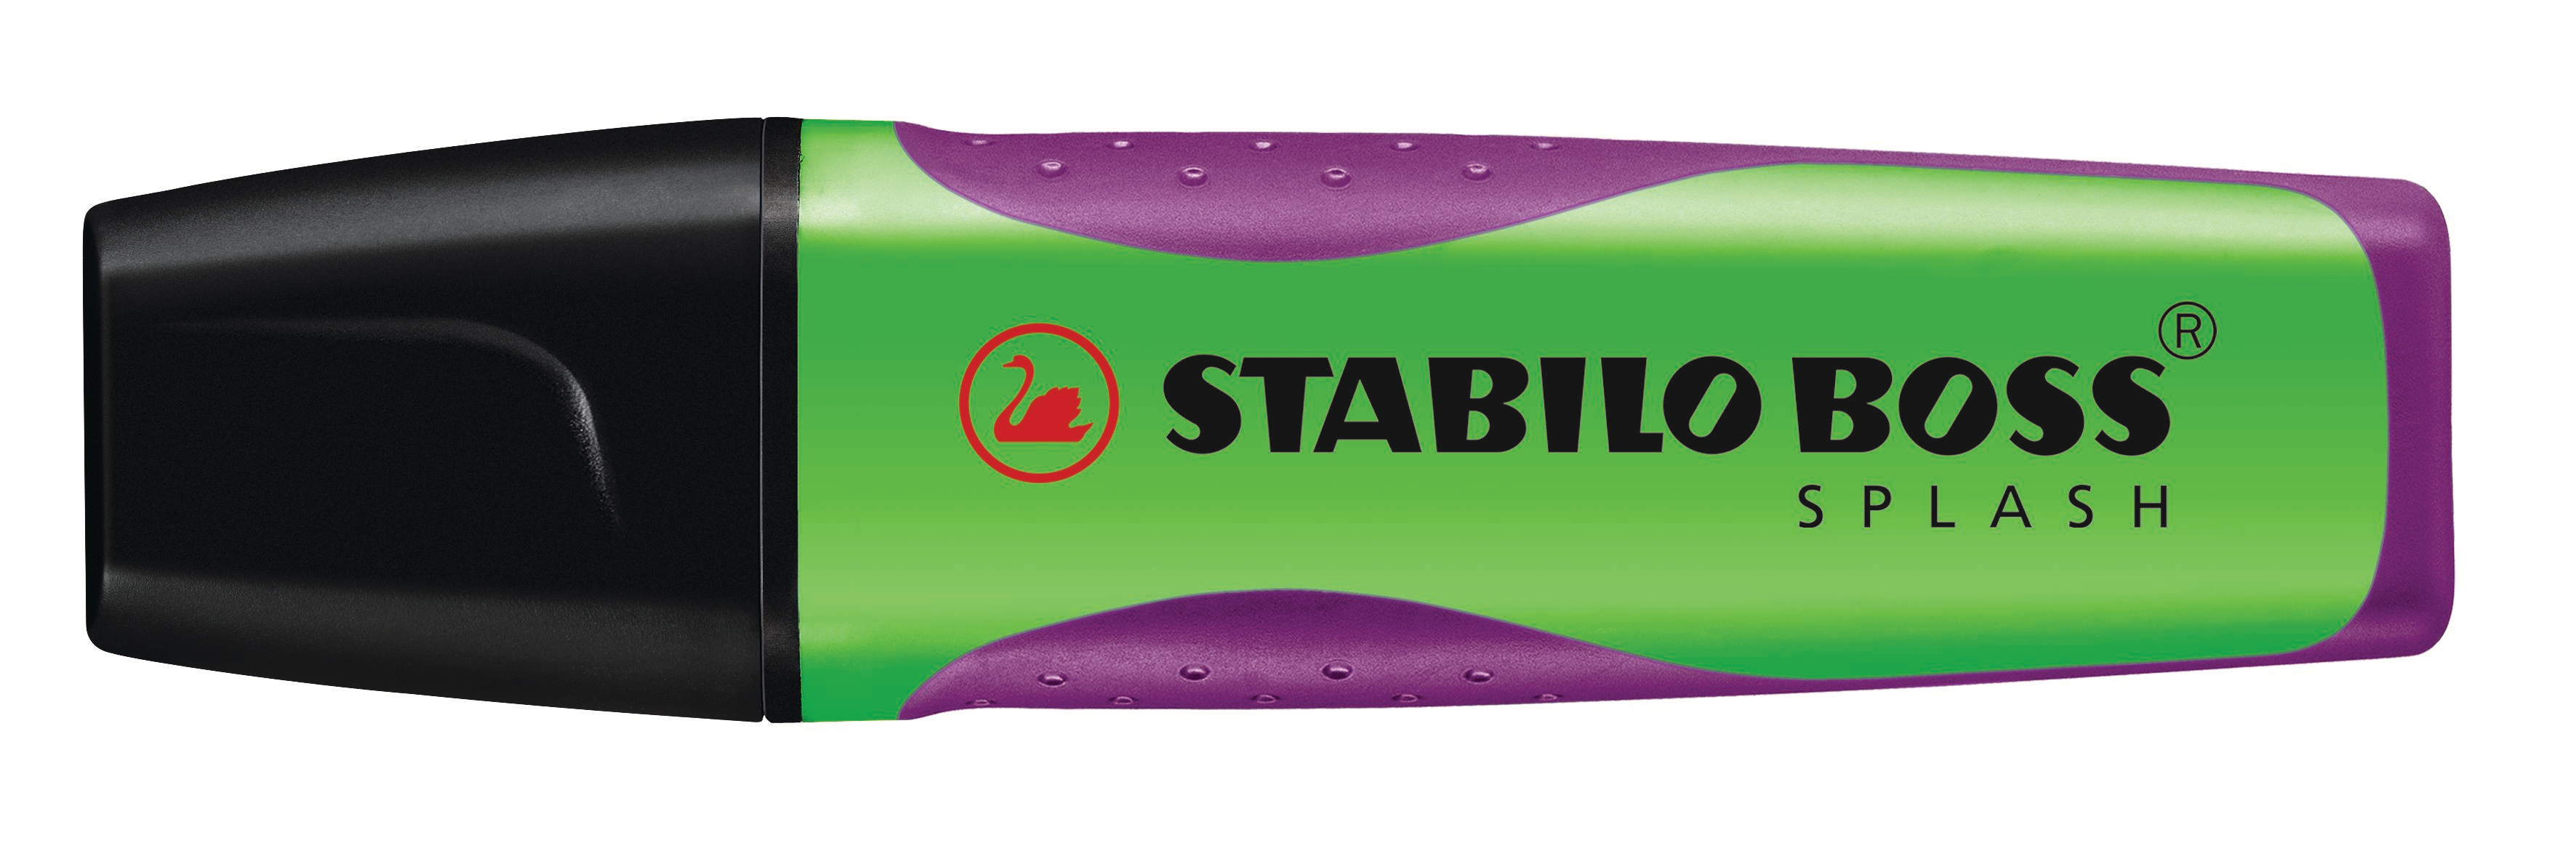 STABILO BOSS SPLASH 75/33 vert vert